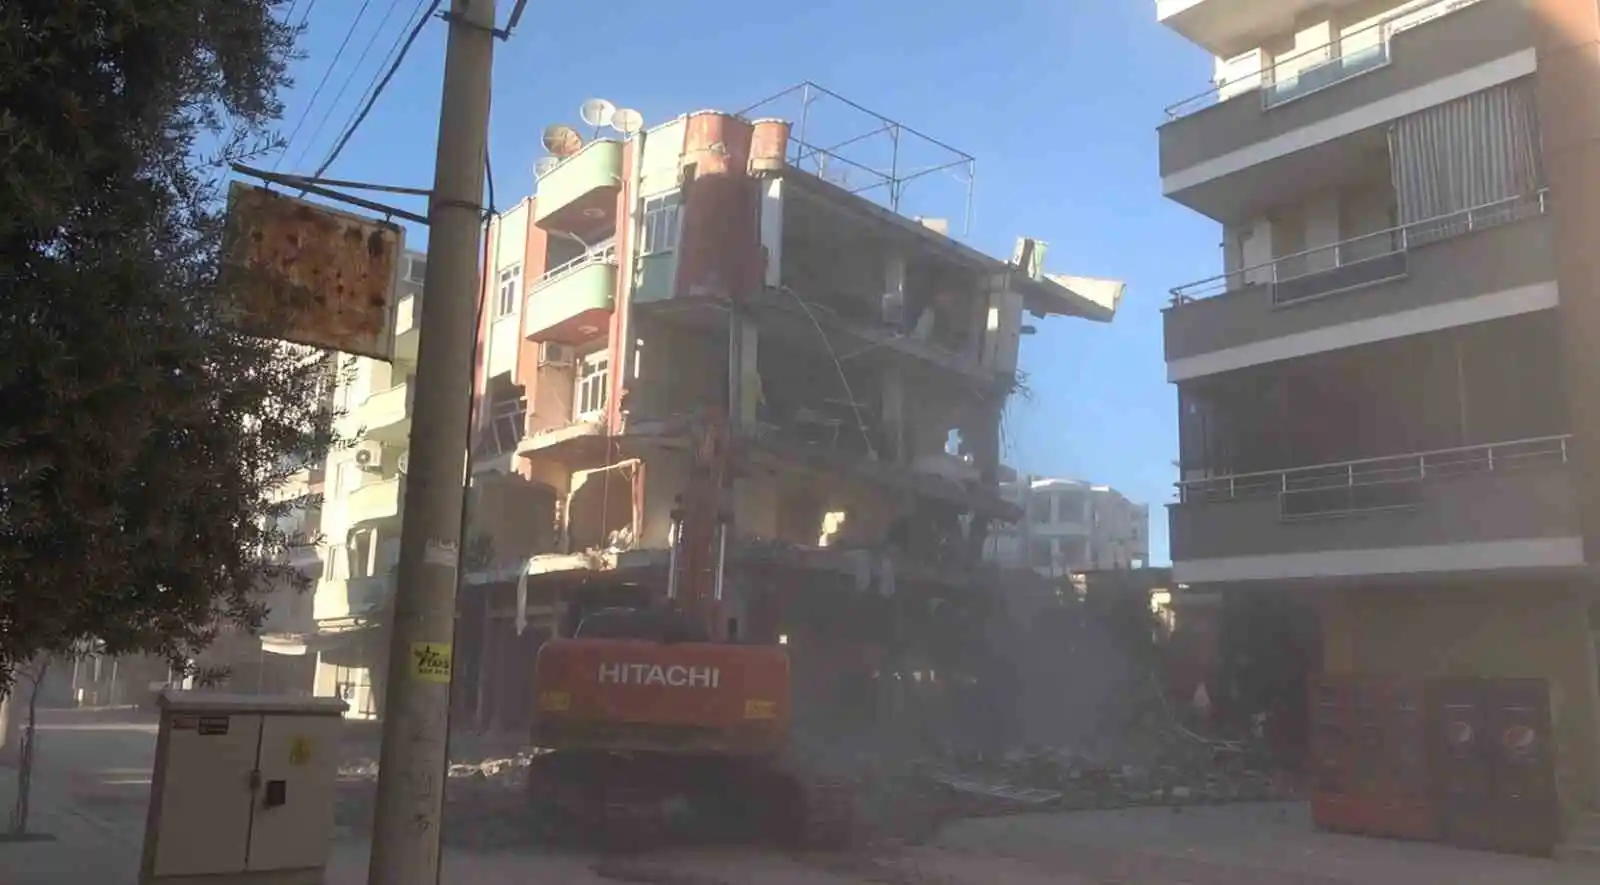 Osmaniye’de 200 binaya acil yıkım kararı
